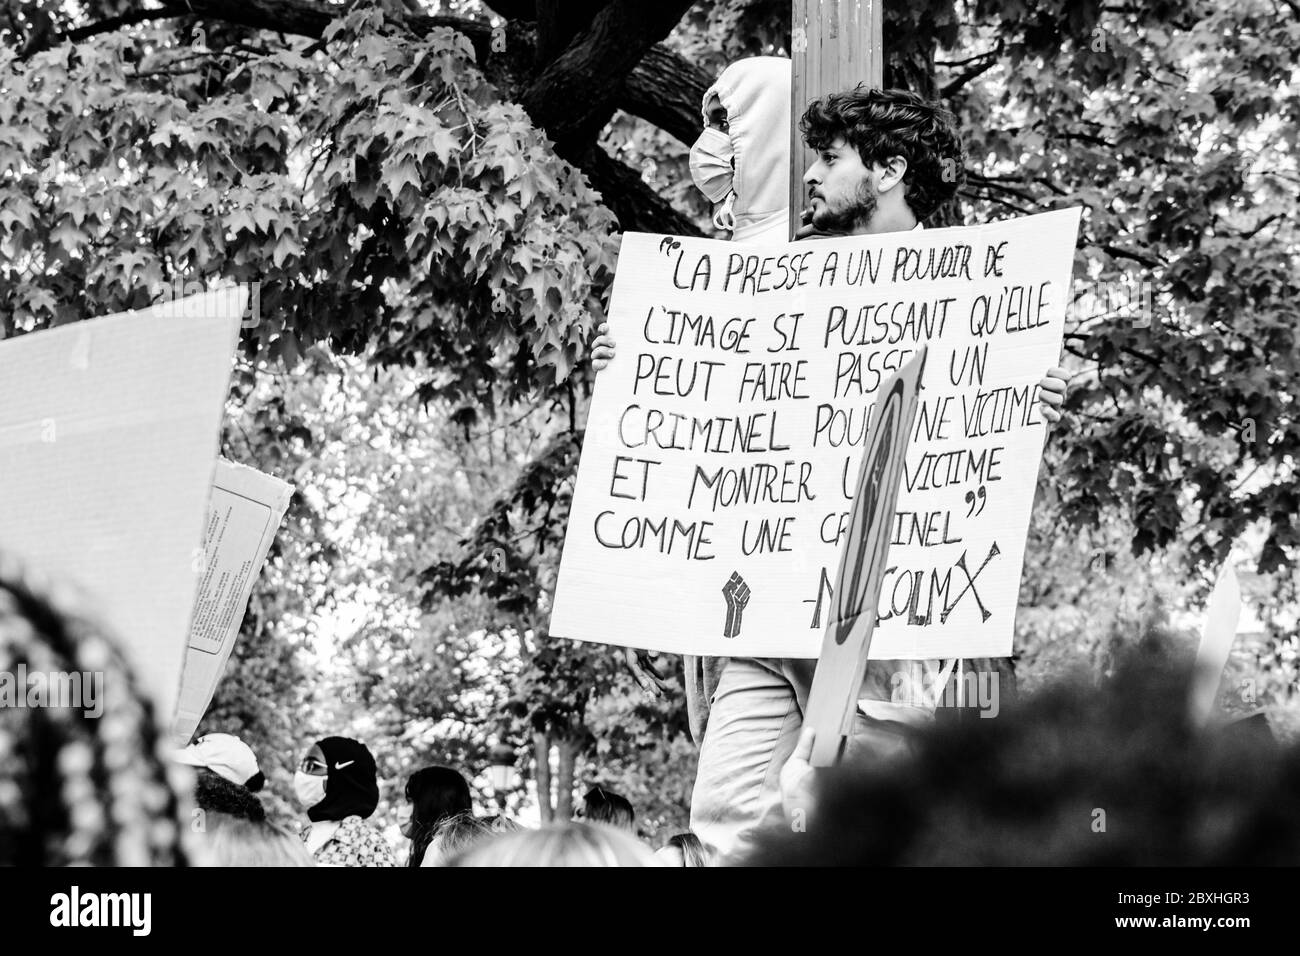 Rassemblement anti-racisme - ville de Québec rassemblement anti-racisme - Québec Banque D'Images